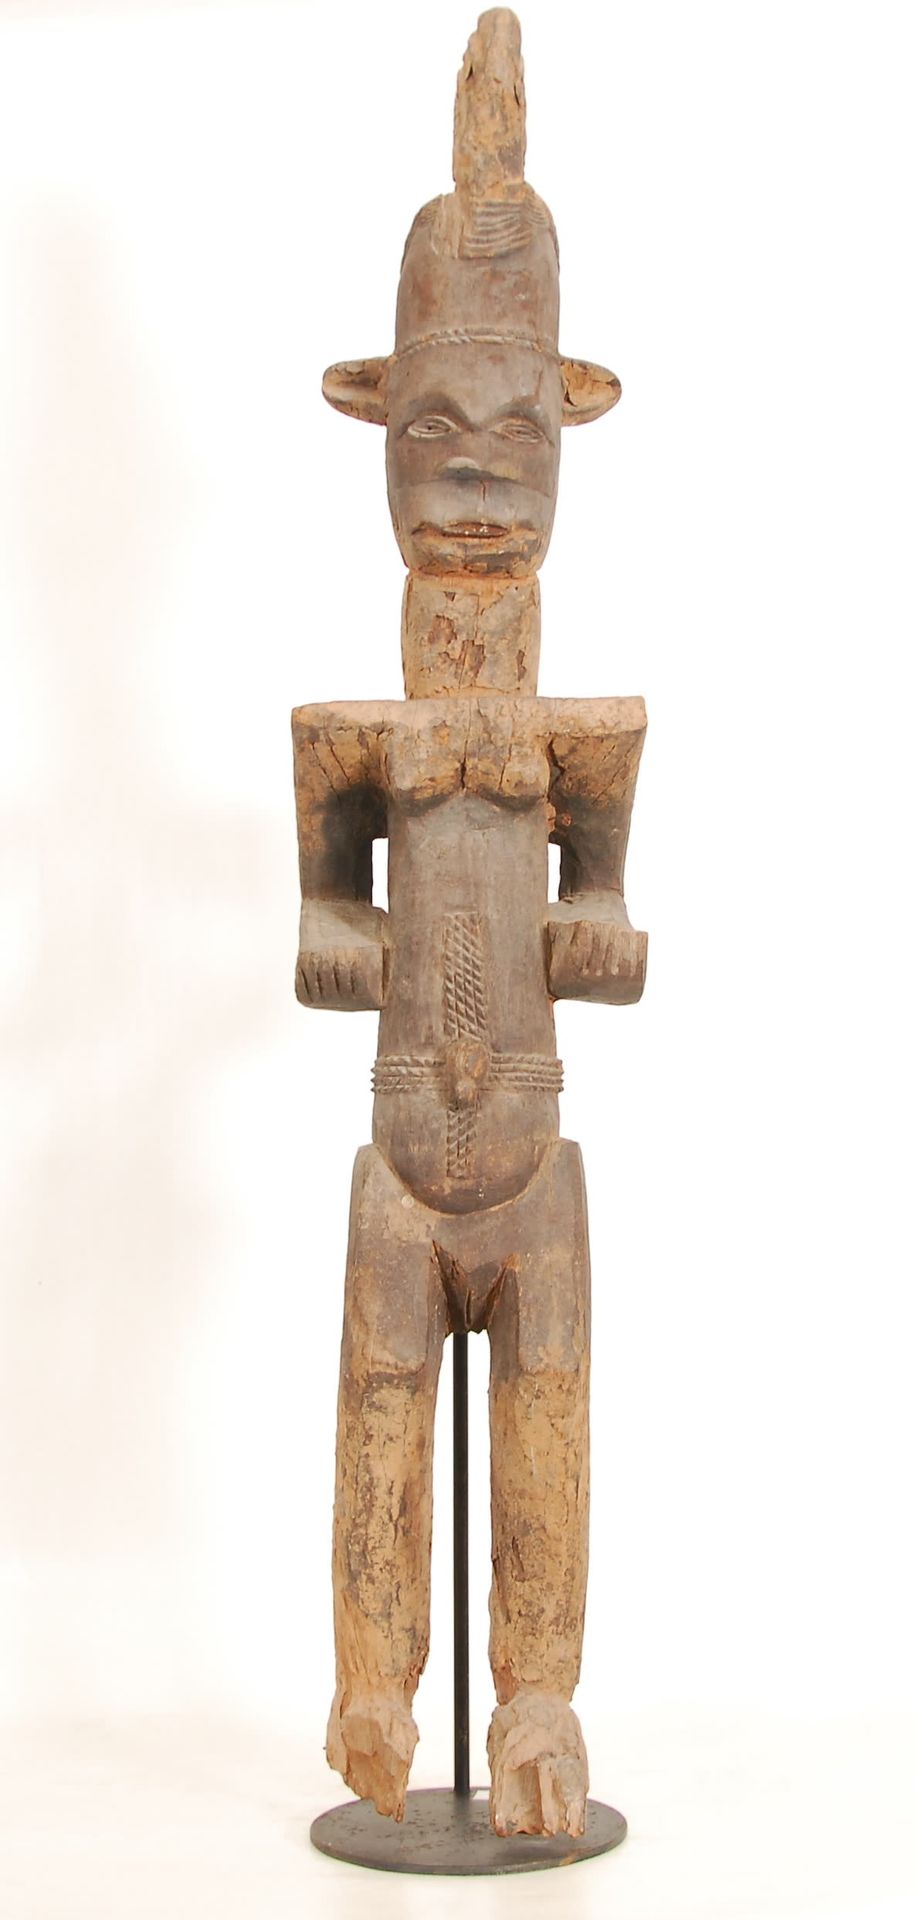 Afrique - Africa Statue Ibo
Bois sculpté. Nigeria.
H. 129 cm.
Provenance: ancien&hellip;